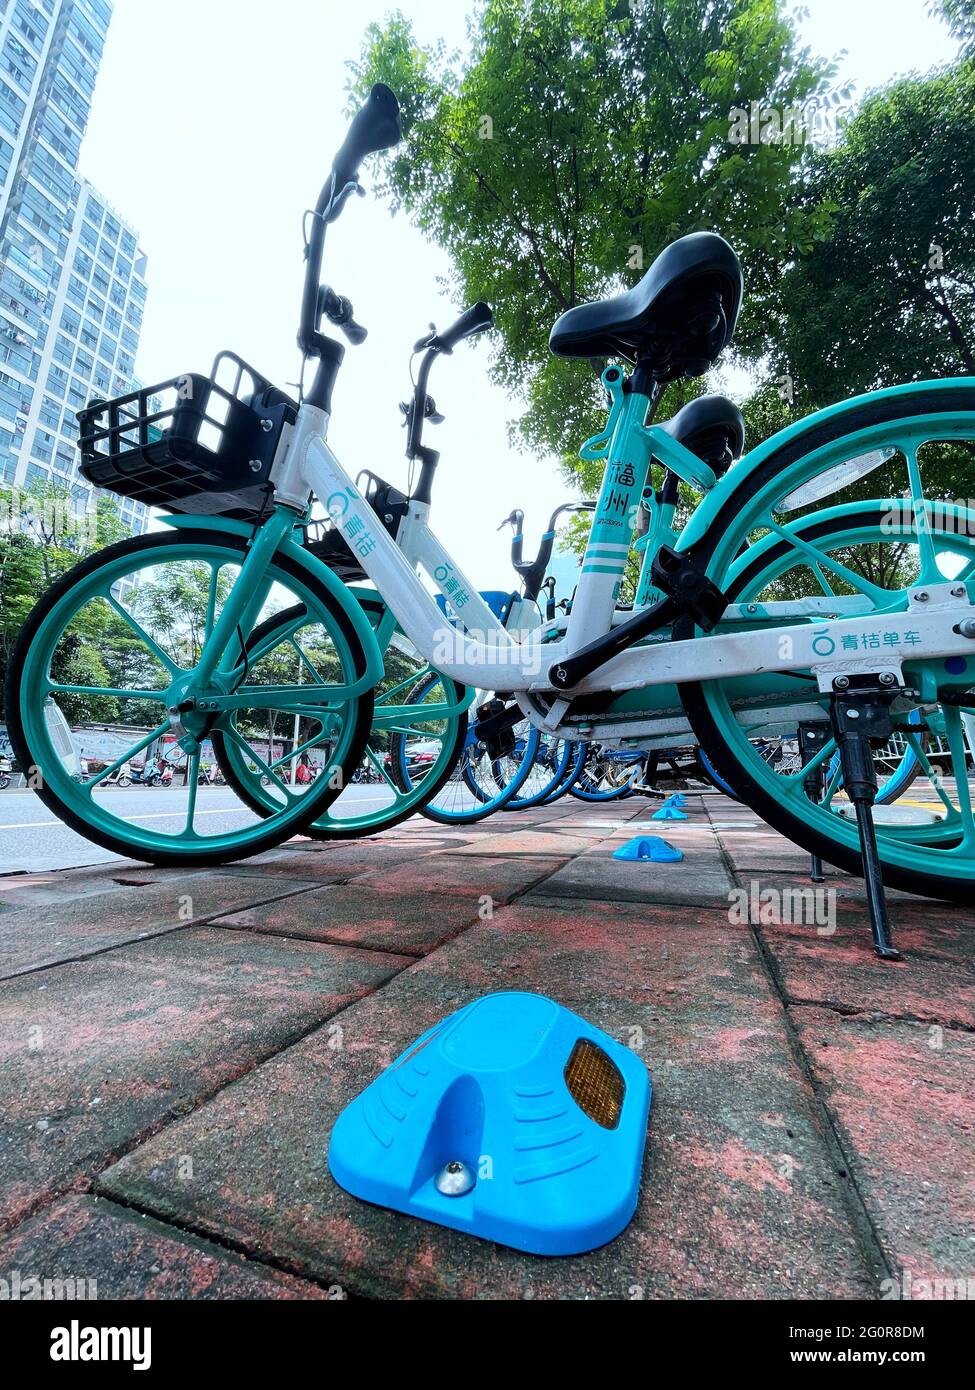 Fuzhou, China. Juni 2021. Die bluetooth-Straßenspitze wird neben der Bike-Sharing-Station eingerichtet, um die Menschen zu überwachen, die die Fahrräder am 02. Juni 2021 in Fuzhou, Fujian, China, an den richtigen Ort gebracht haben. (Foto: TPG/cnsphotos) Quelle: TopPhoto/Alamy Live News Stockfoto